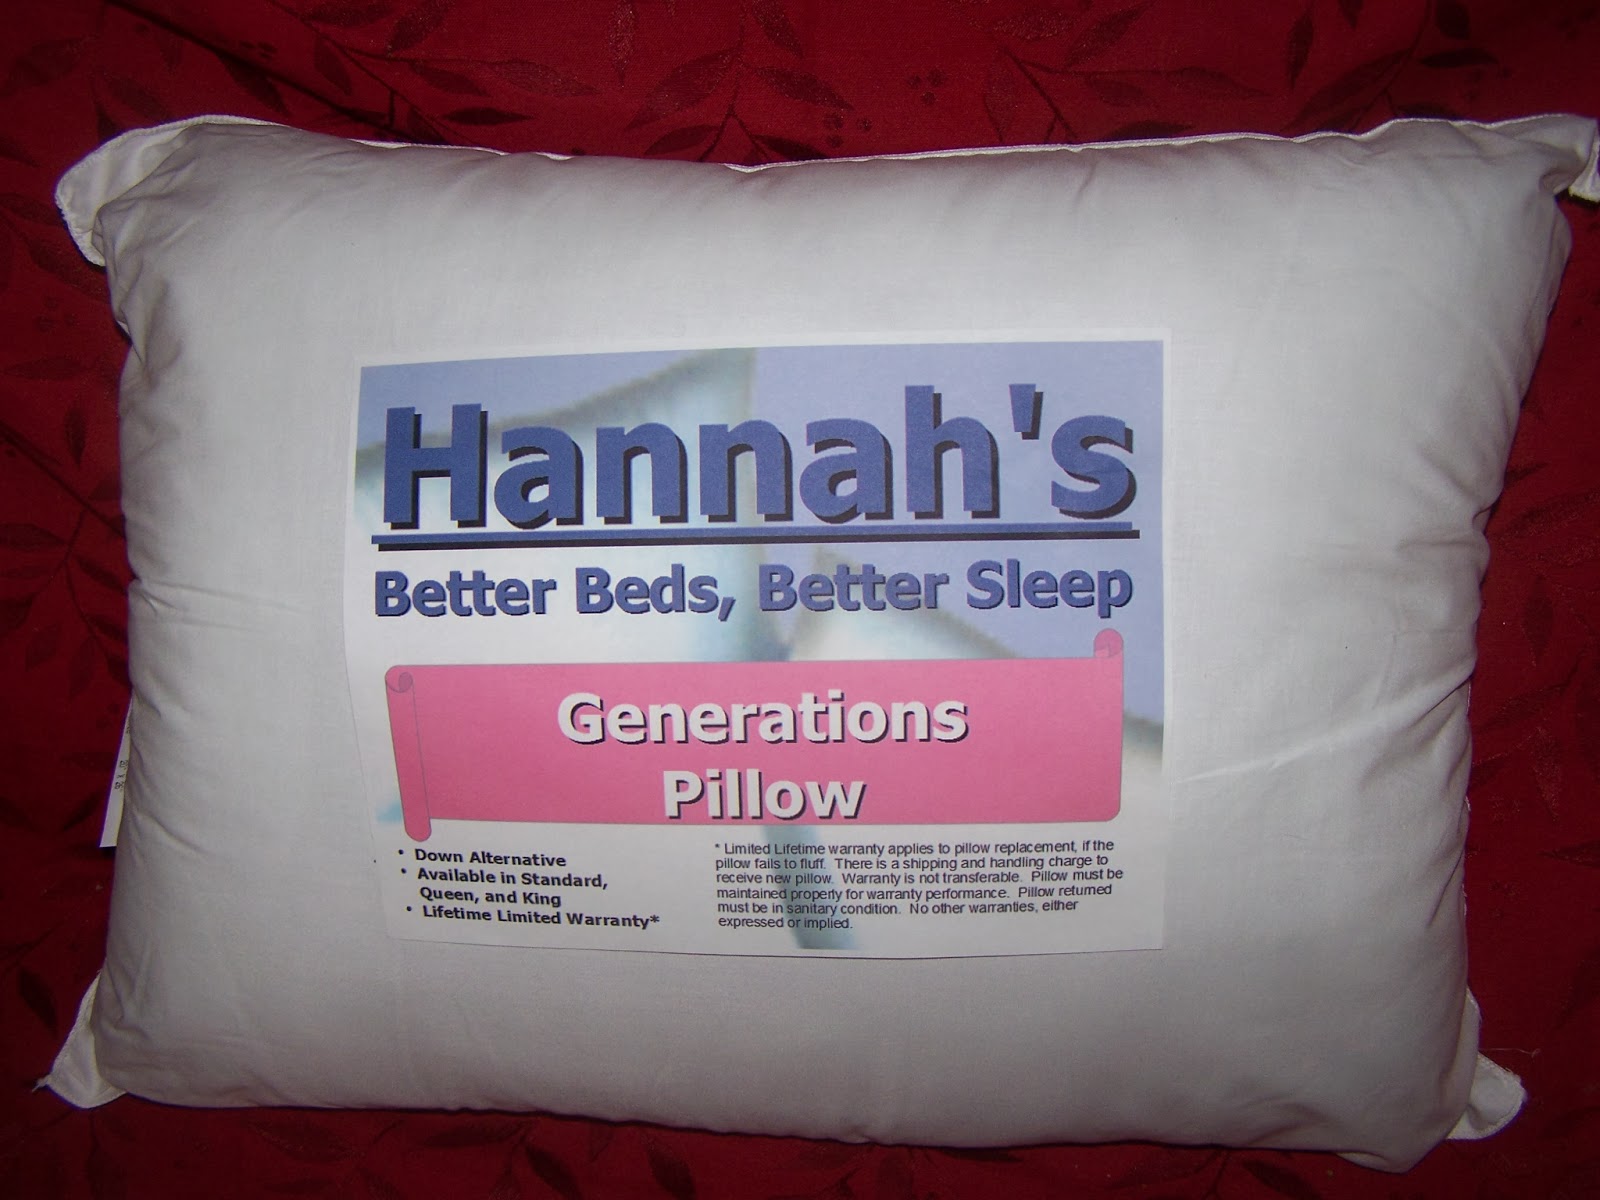 http://hannahsbetterbeds.com/Generations_Pillow.html